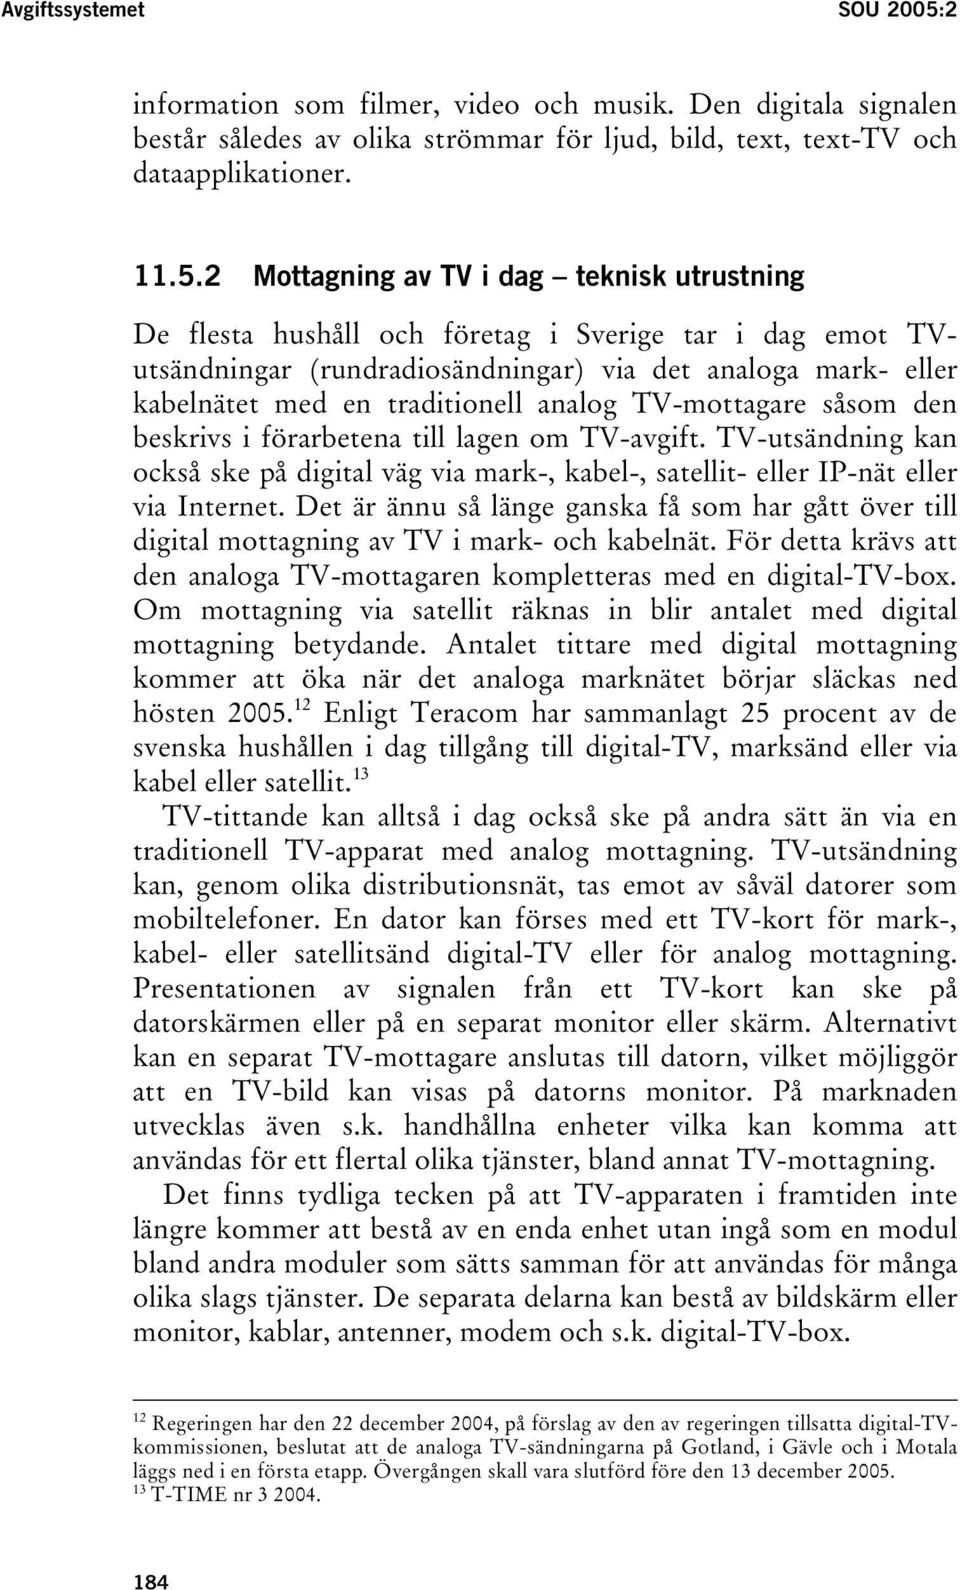 2 Mottagning av TV i dag teknisk utrustning De flesta hushåll och företag i Sverige tar i dag emot TVutsändningar (rundradiosändningar) via det analoga mark- eller kabelnätet med en traditionell